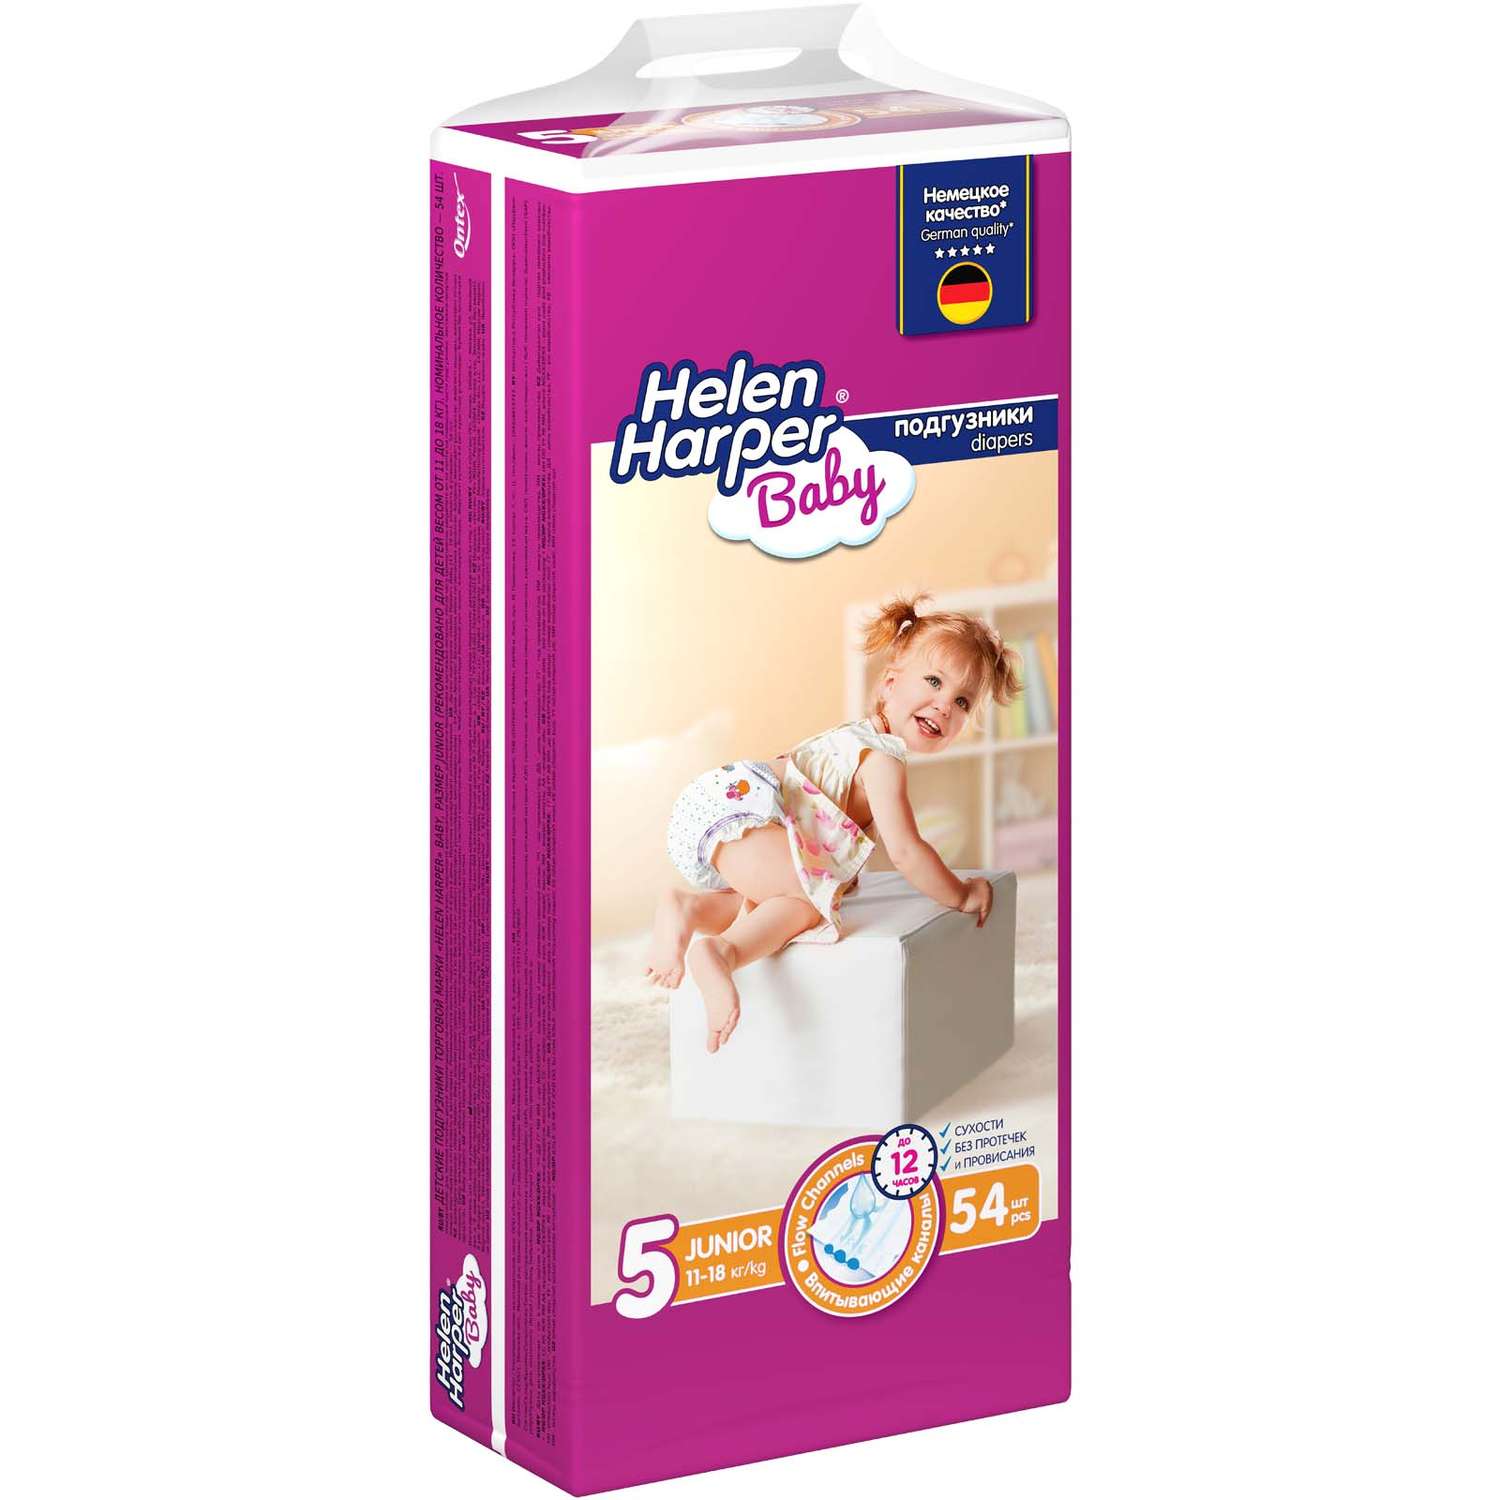 Подгузники детские Helen Harper Baby размер 5 Junior 11-18 кг 54 шт - фото 2